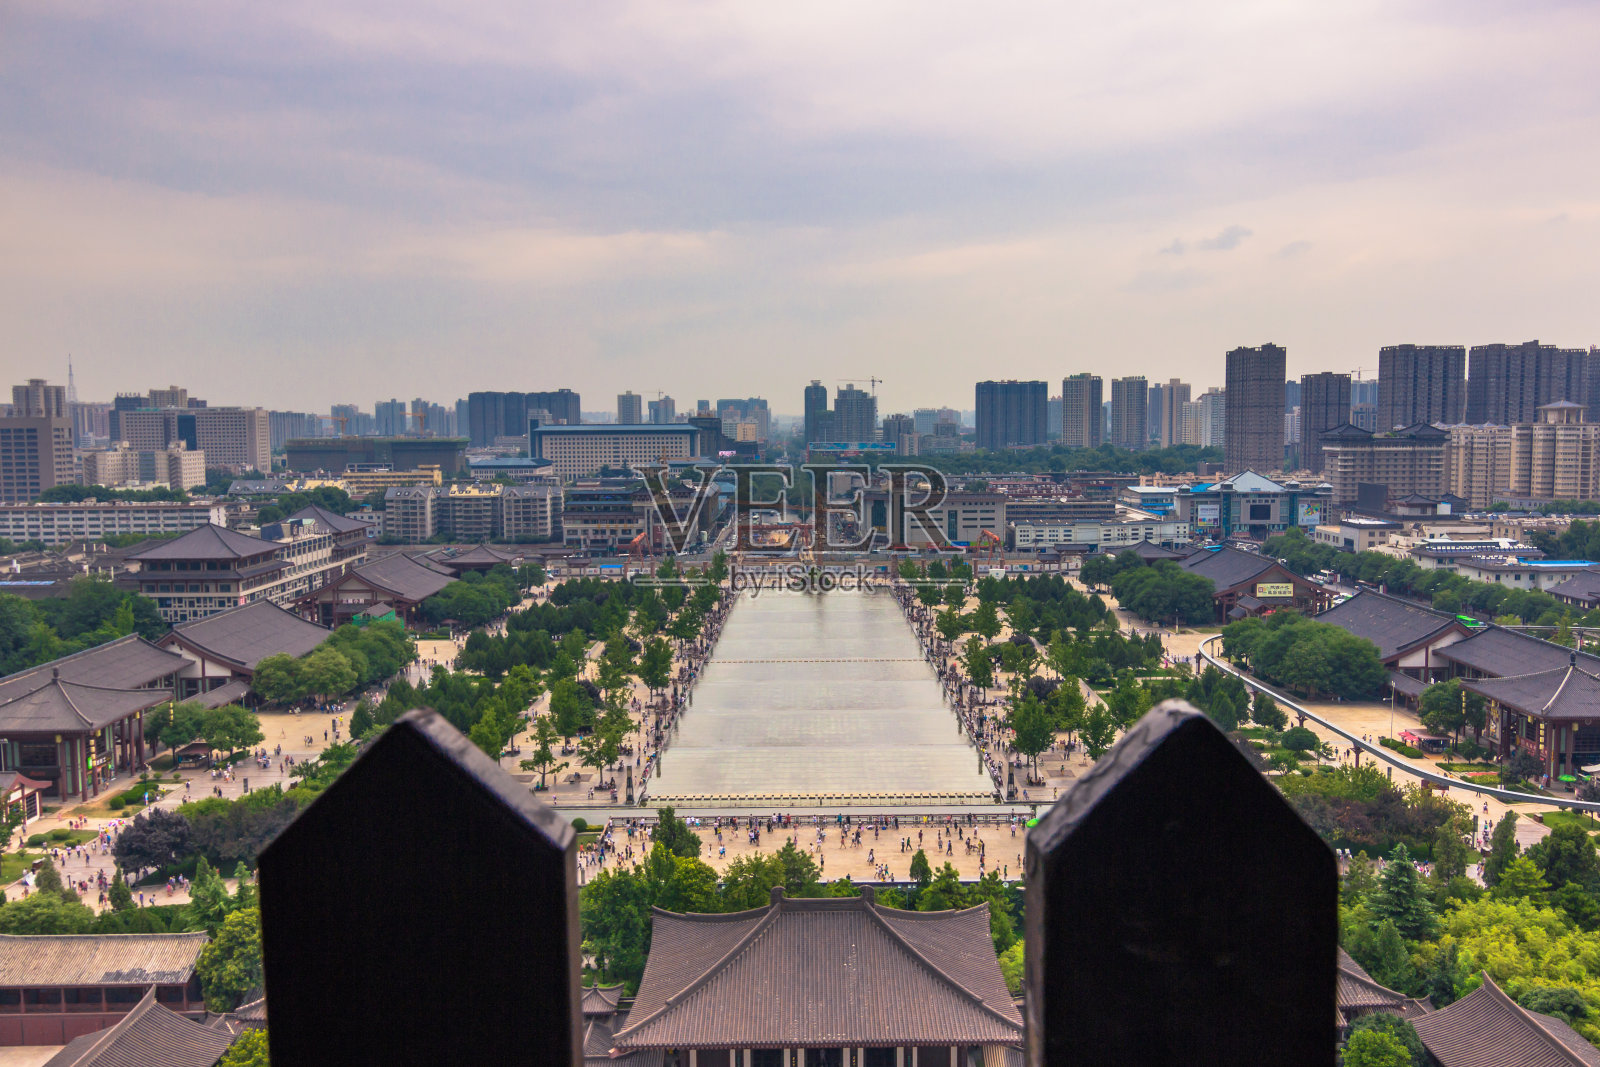 中国西安——2014年7月23日:从大雁塔俯瞰西安全景照片摄影图片